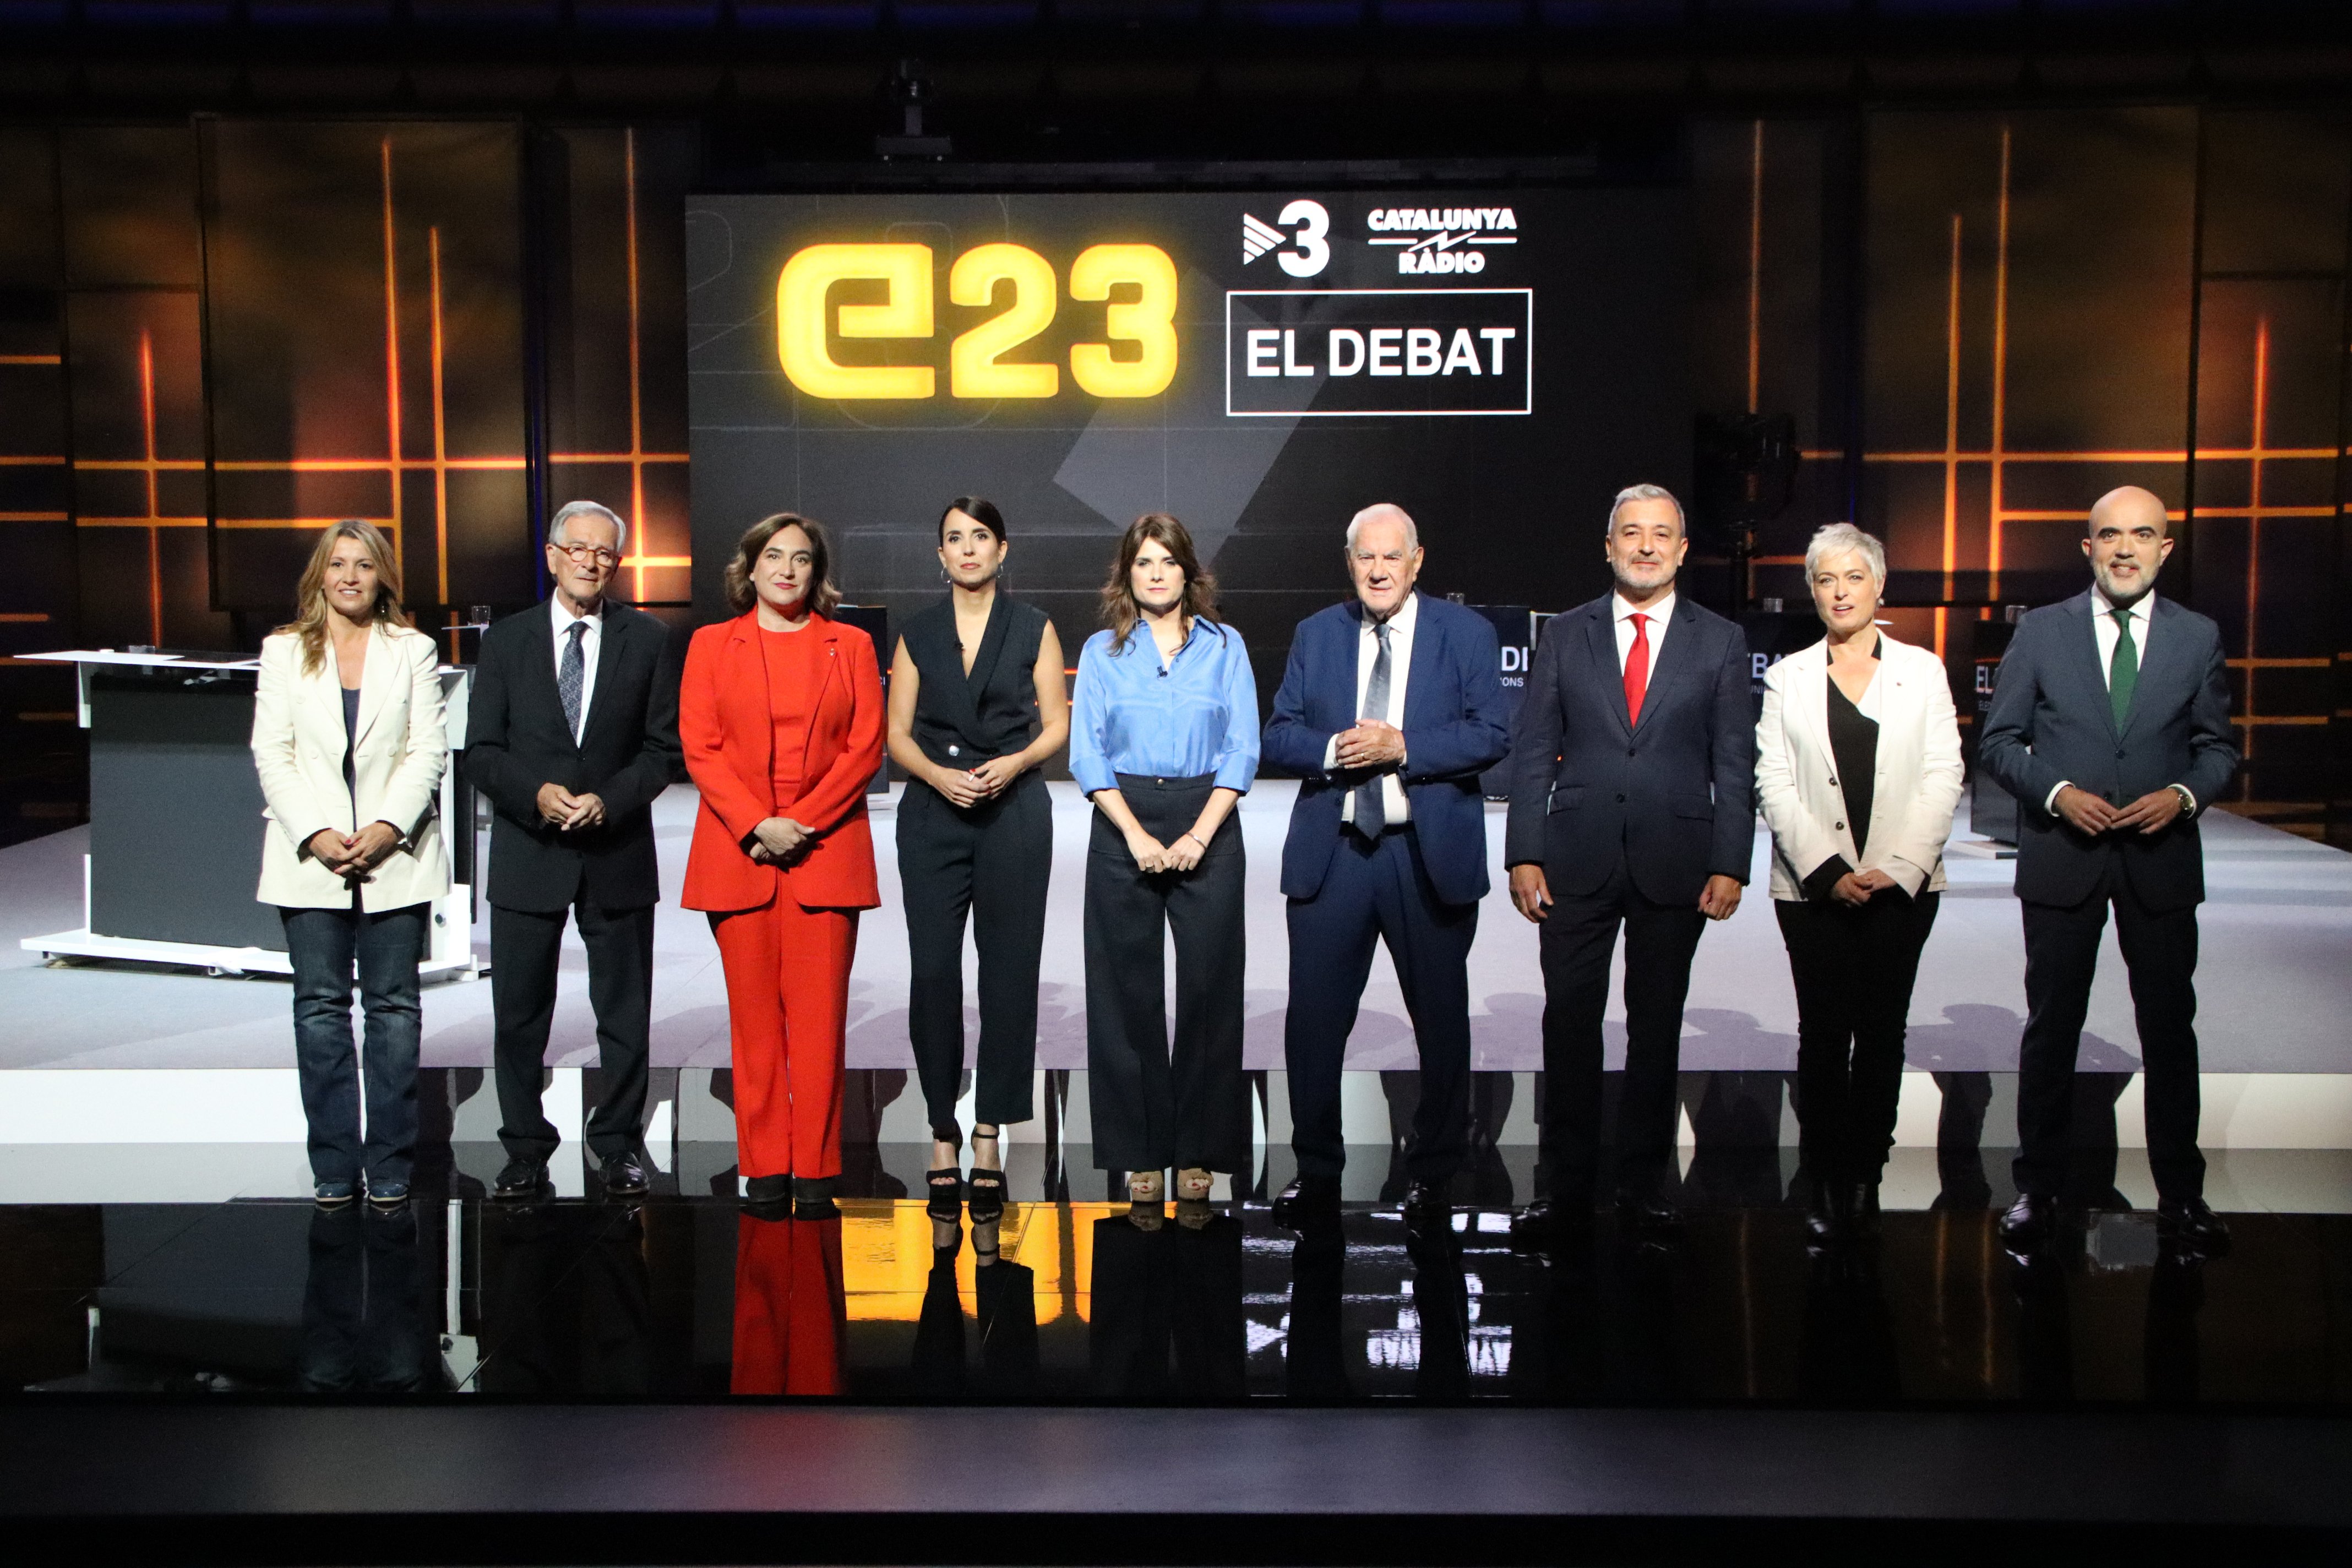 Enganxades i enganys: Les 10 verificacions del debat electoral de Barcelona a TV3